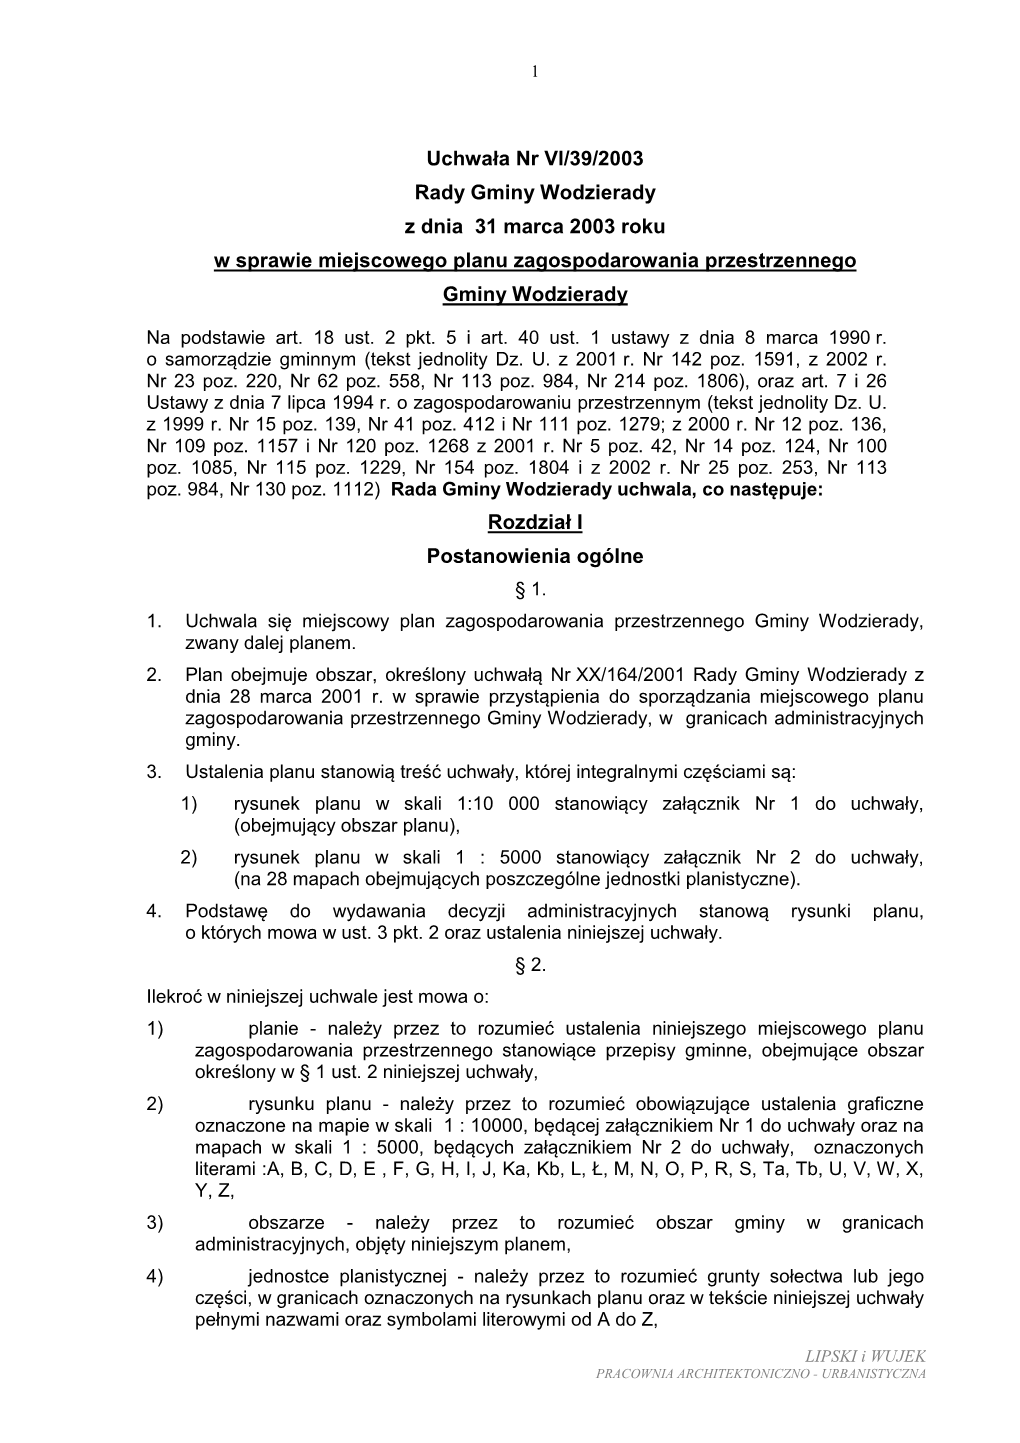 Uchwała Nr VI/39/2003 Rady Gminy Wodzierady Z Dnia 31 Marca 2003 Roku W Sprawie Miejscowego Planu Zagospodarowania Przestrzennego Gminy Wodzierady